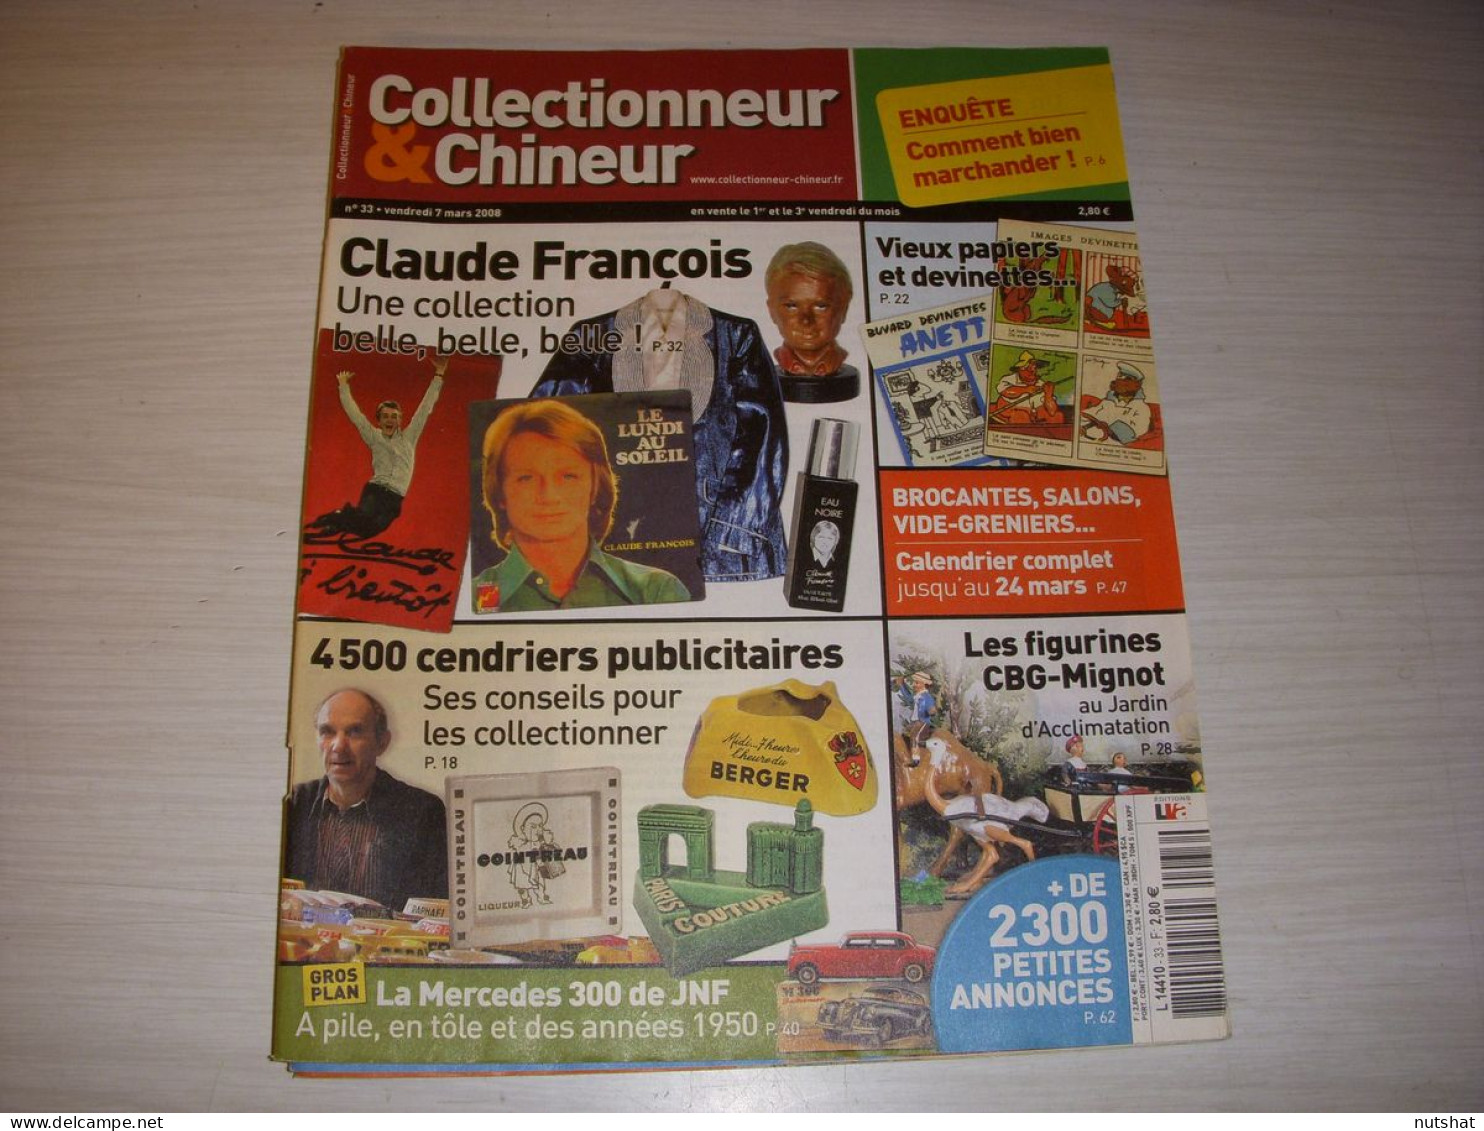 COLLECTIONNEUR CHINEUR 033 07.03.2008 CLAUDE FRANCOIS CENDRIERS PAPIER DEVINETTE - Brocantes & Collections